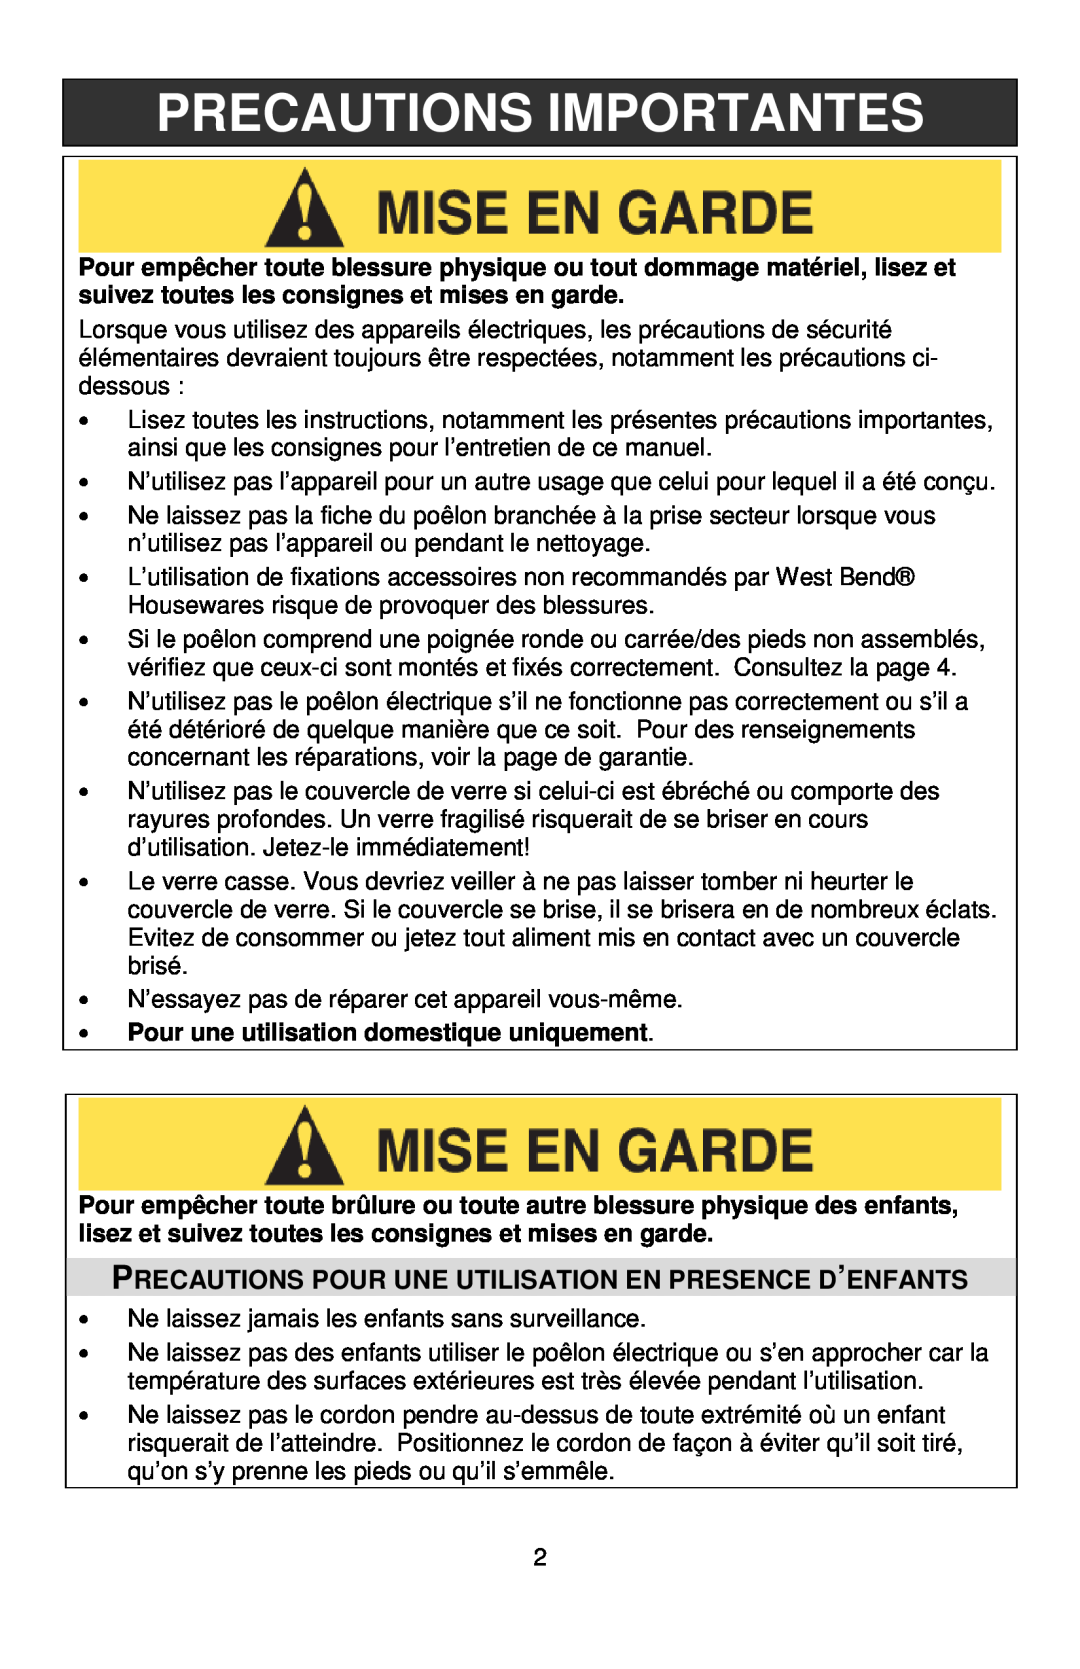 West Bend L5571D instruction manual Precautions Importantes, Precautions Pour Une Utilisation En Presence D’Enfants 